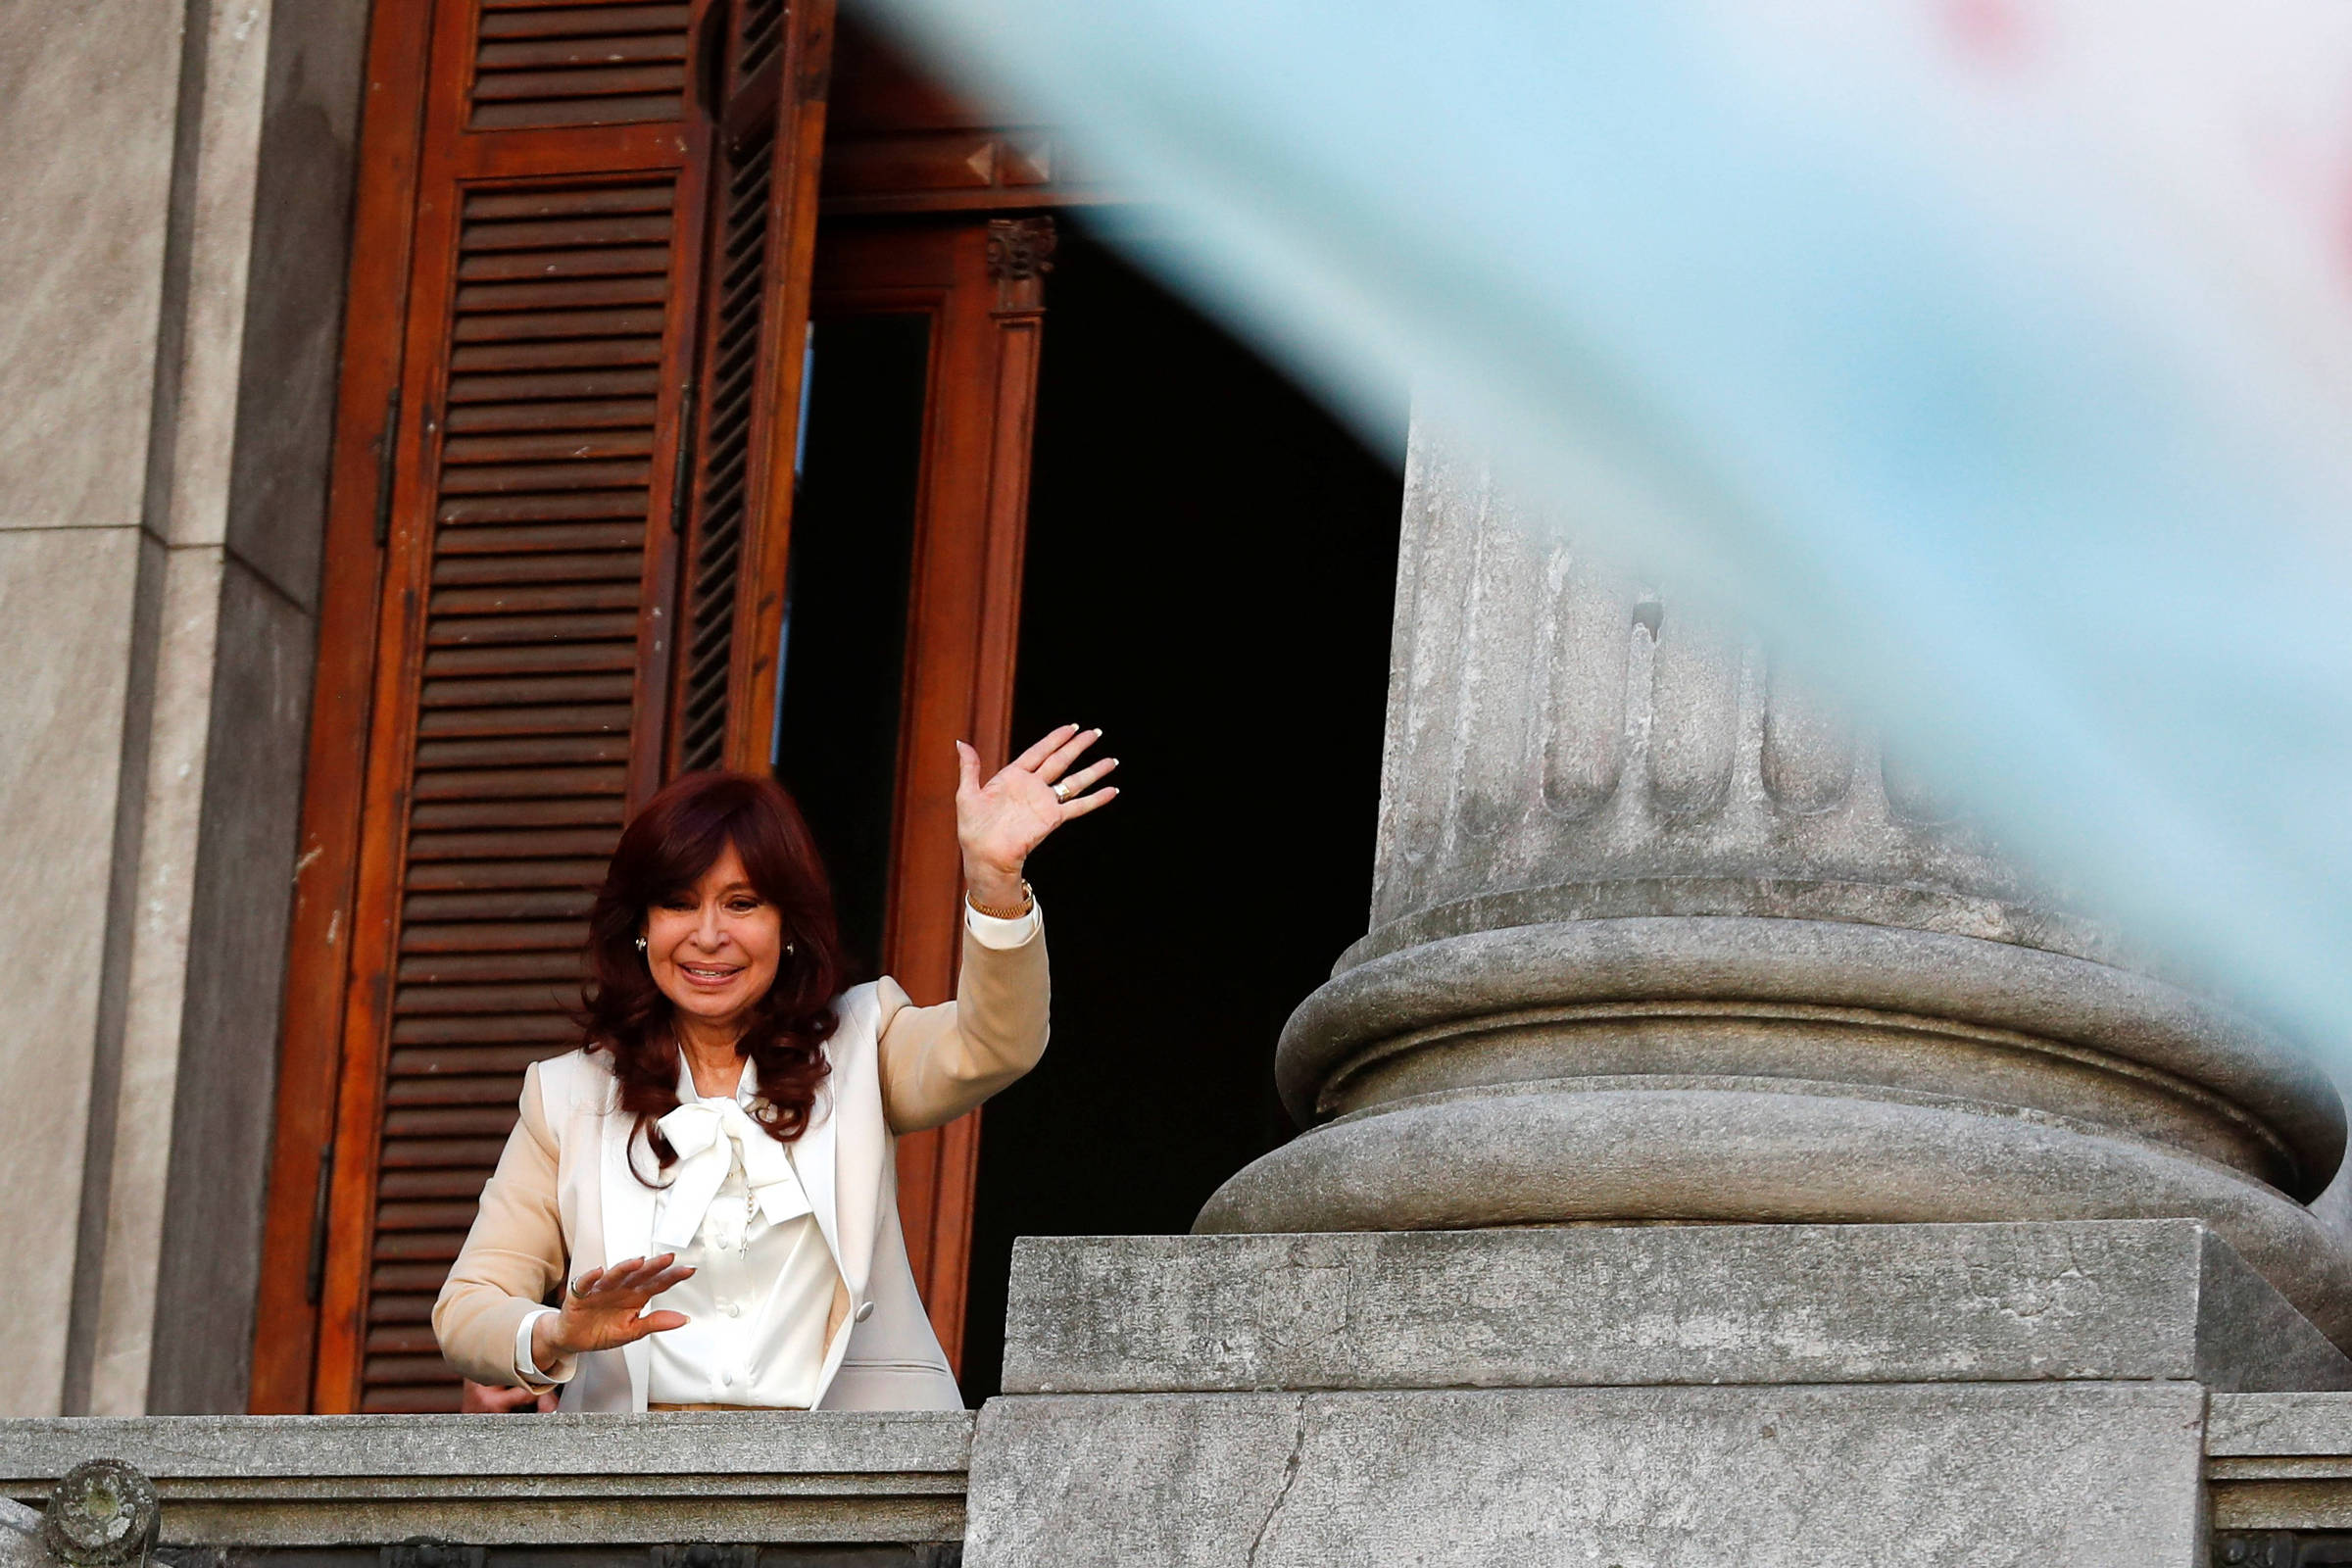 Argentina: Líderes apoyan a Cristina Kirchner en carta – 25/08/2022 – Mundo